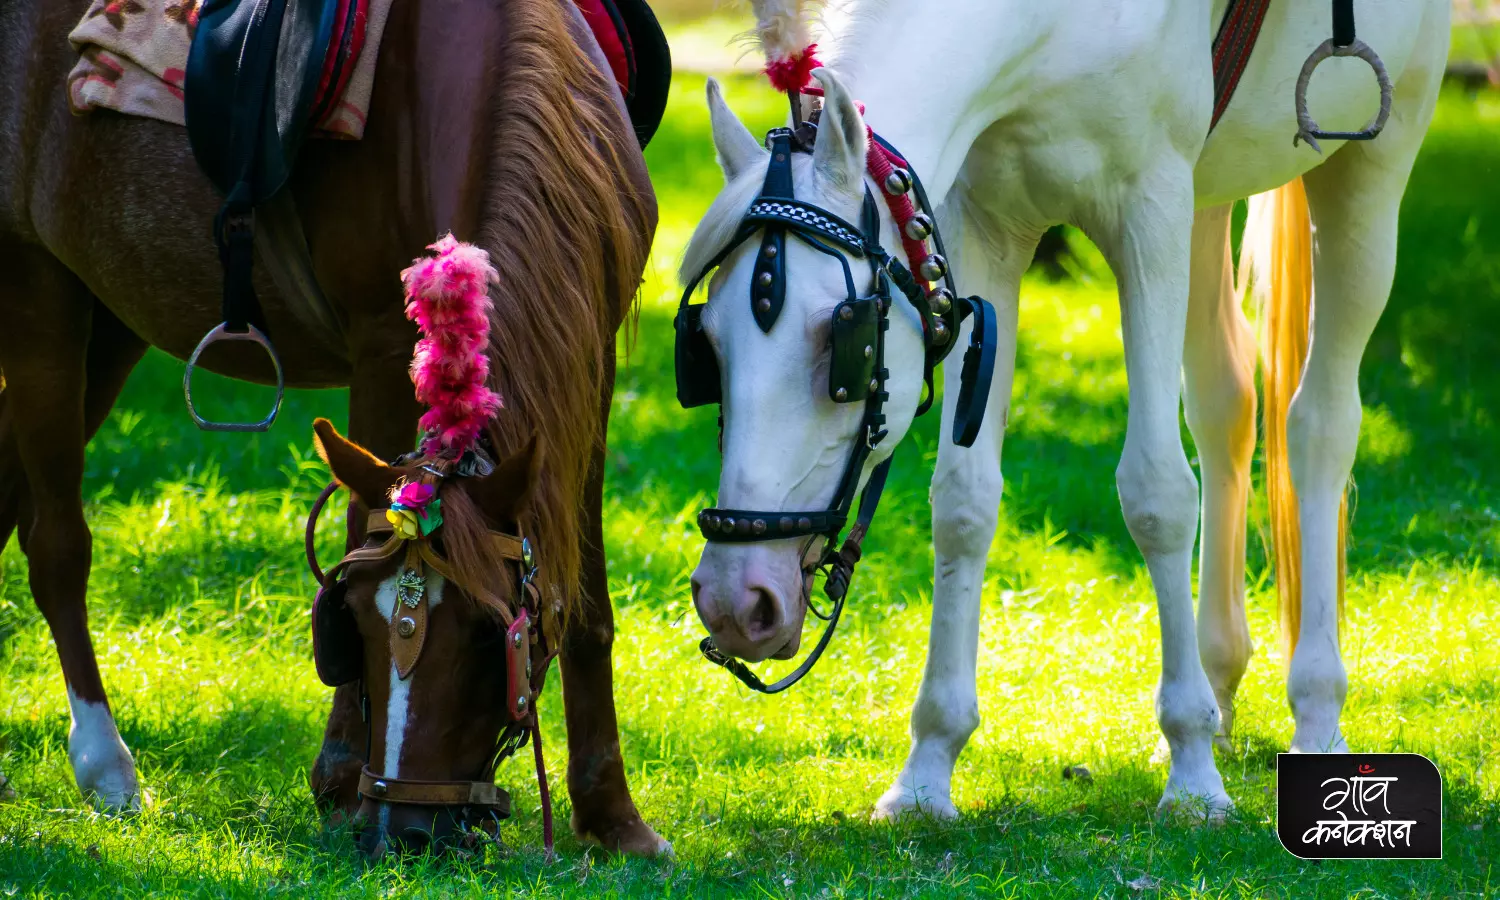 भारत में पाए जाने वाले घोड़ों की इन नस्लों के बारे में जानते हैं?